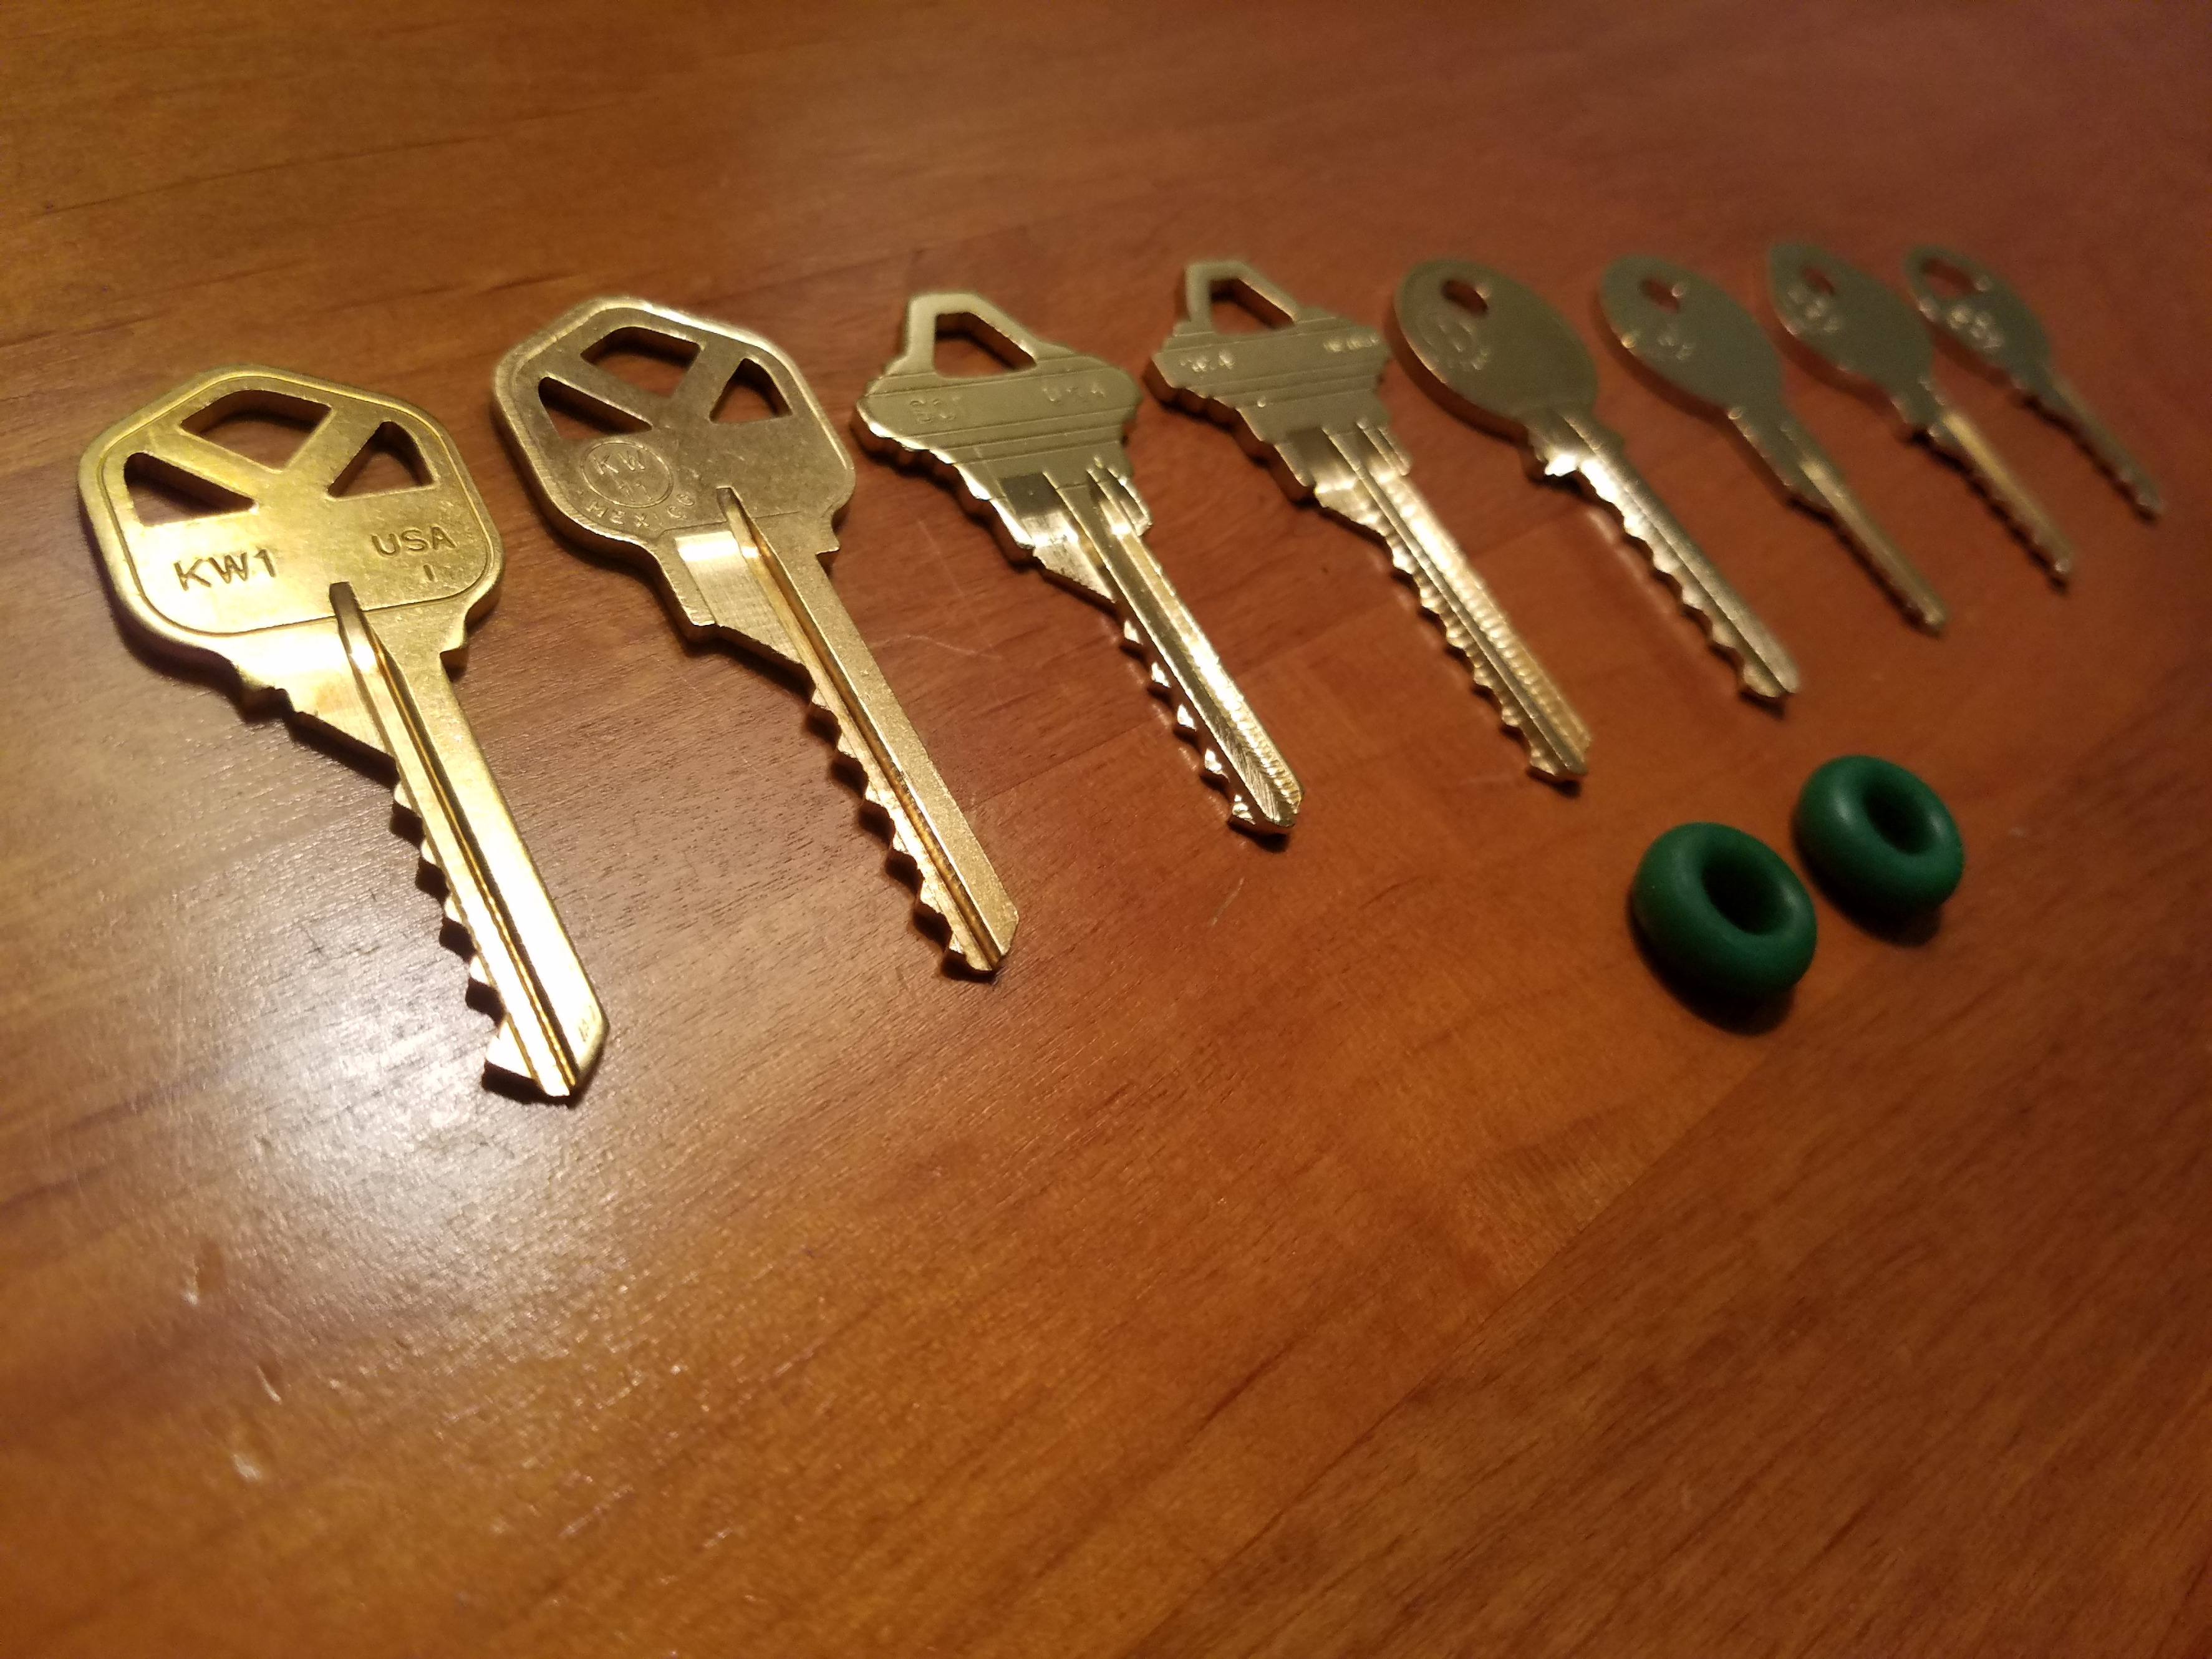 Bump Keys KW1, KW11, SC1, SC4, Y1, Y11, M1, M10